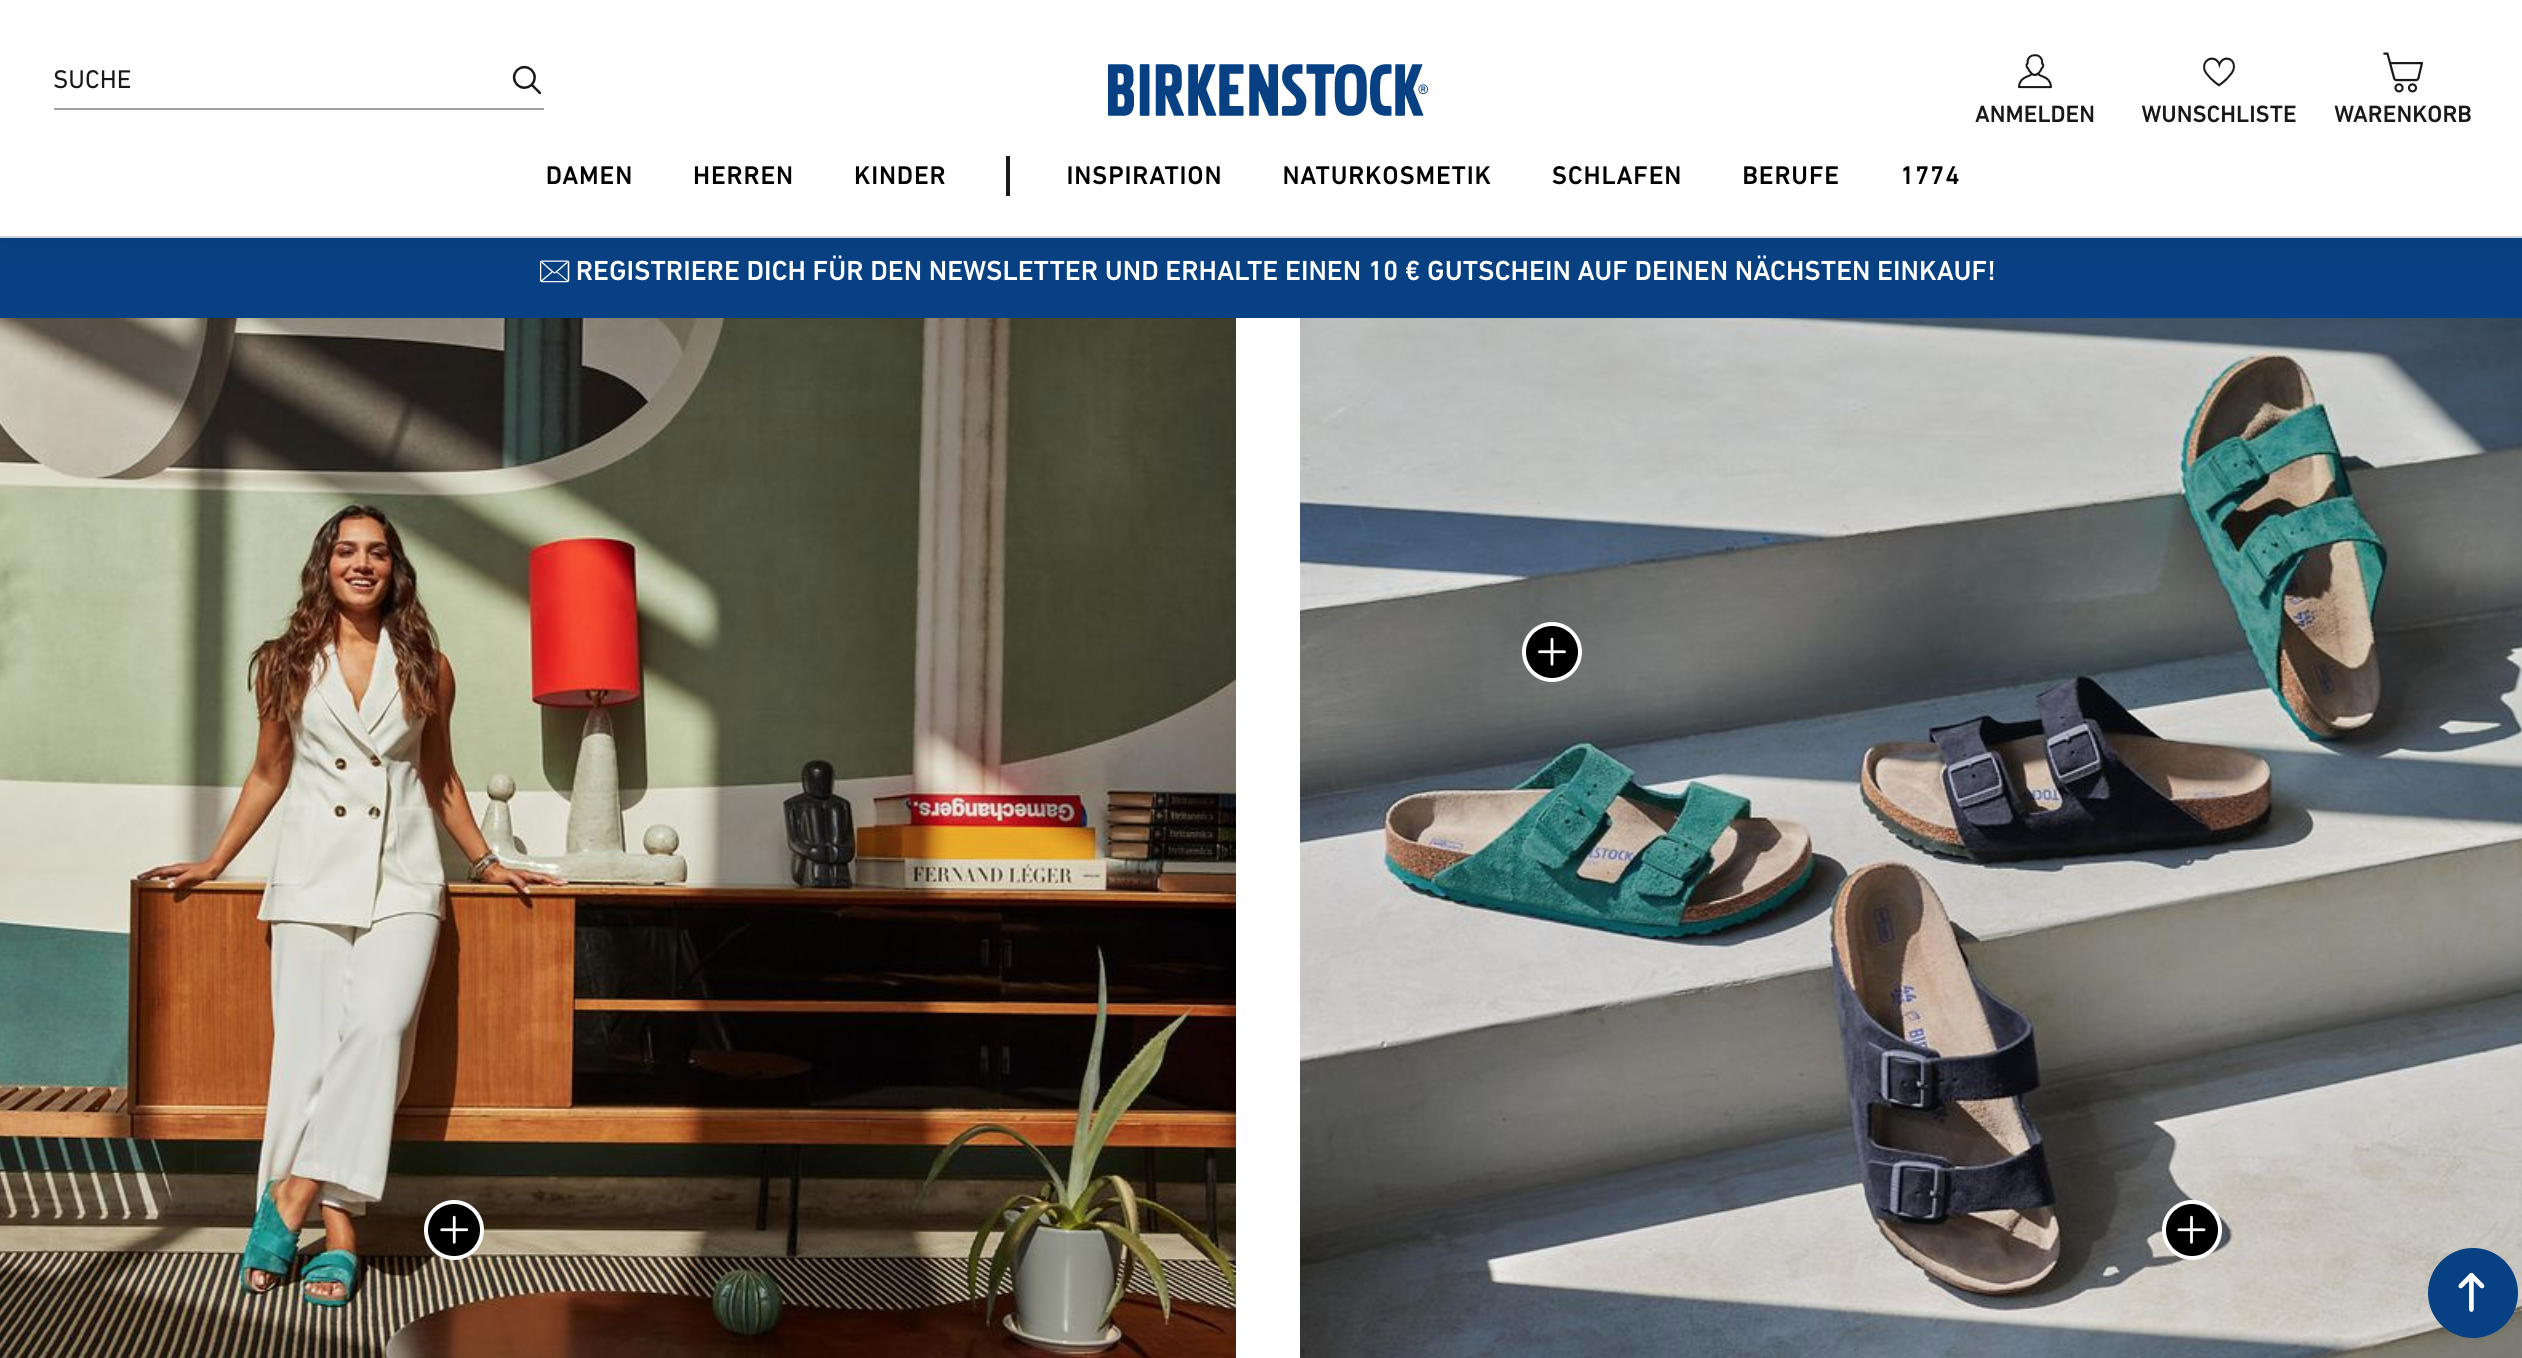 德国百年凉鞋品牌 Birkenstock 将投资1亿欧元升级和扩张供应链